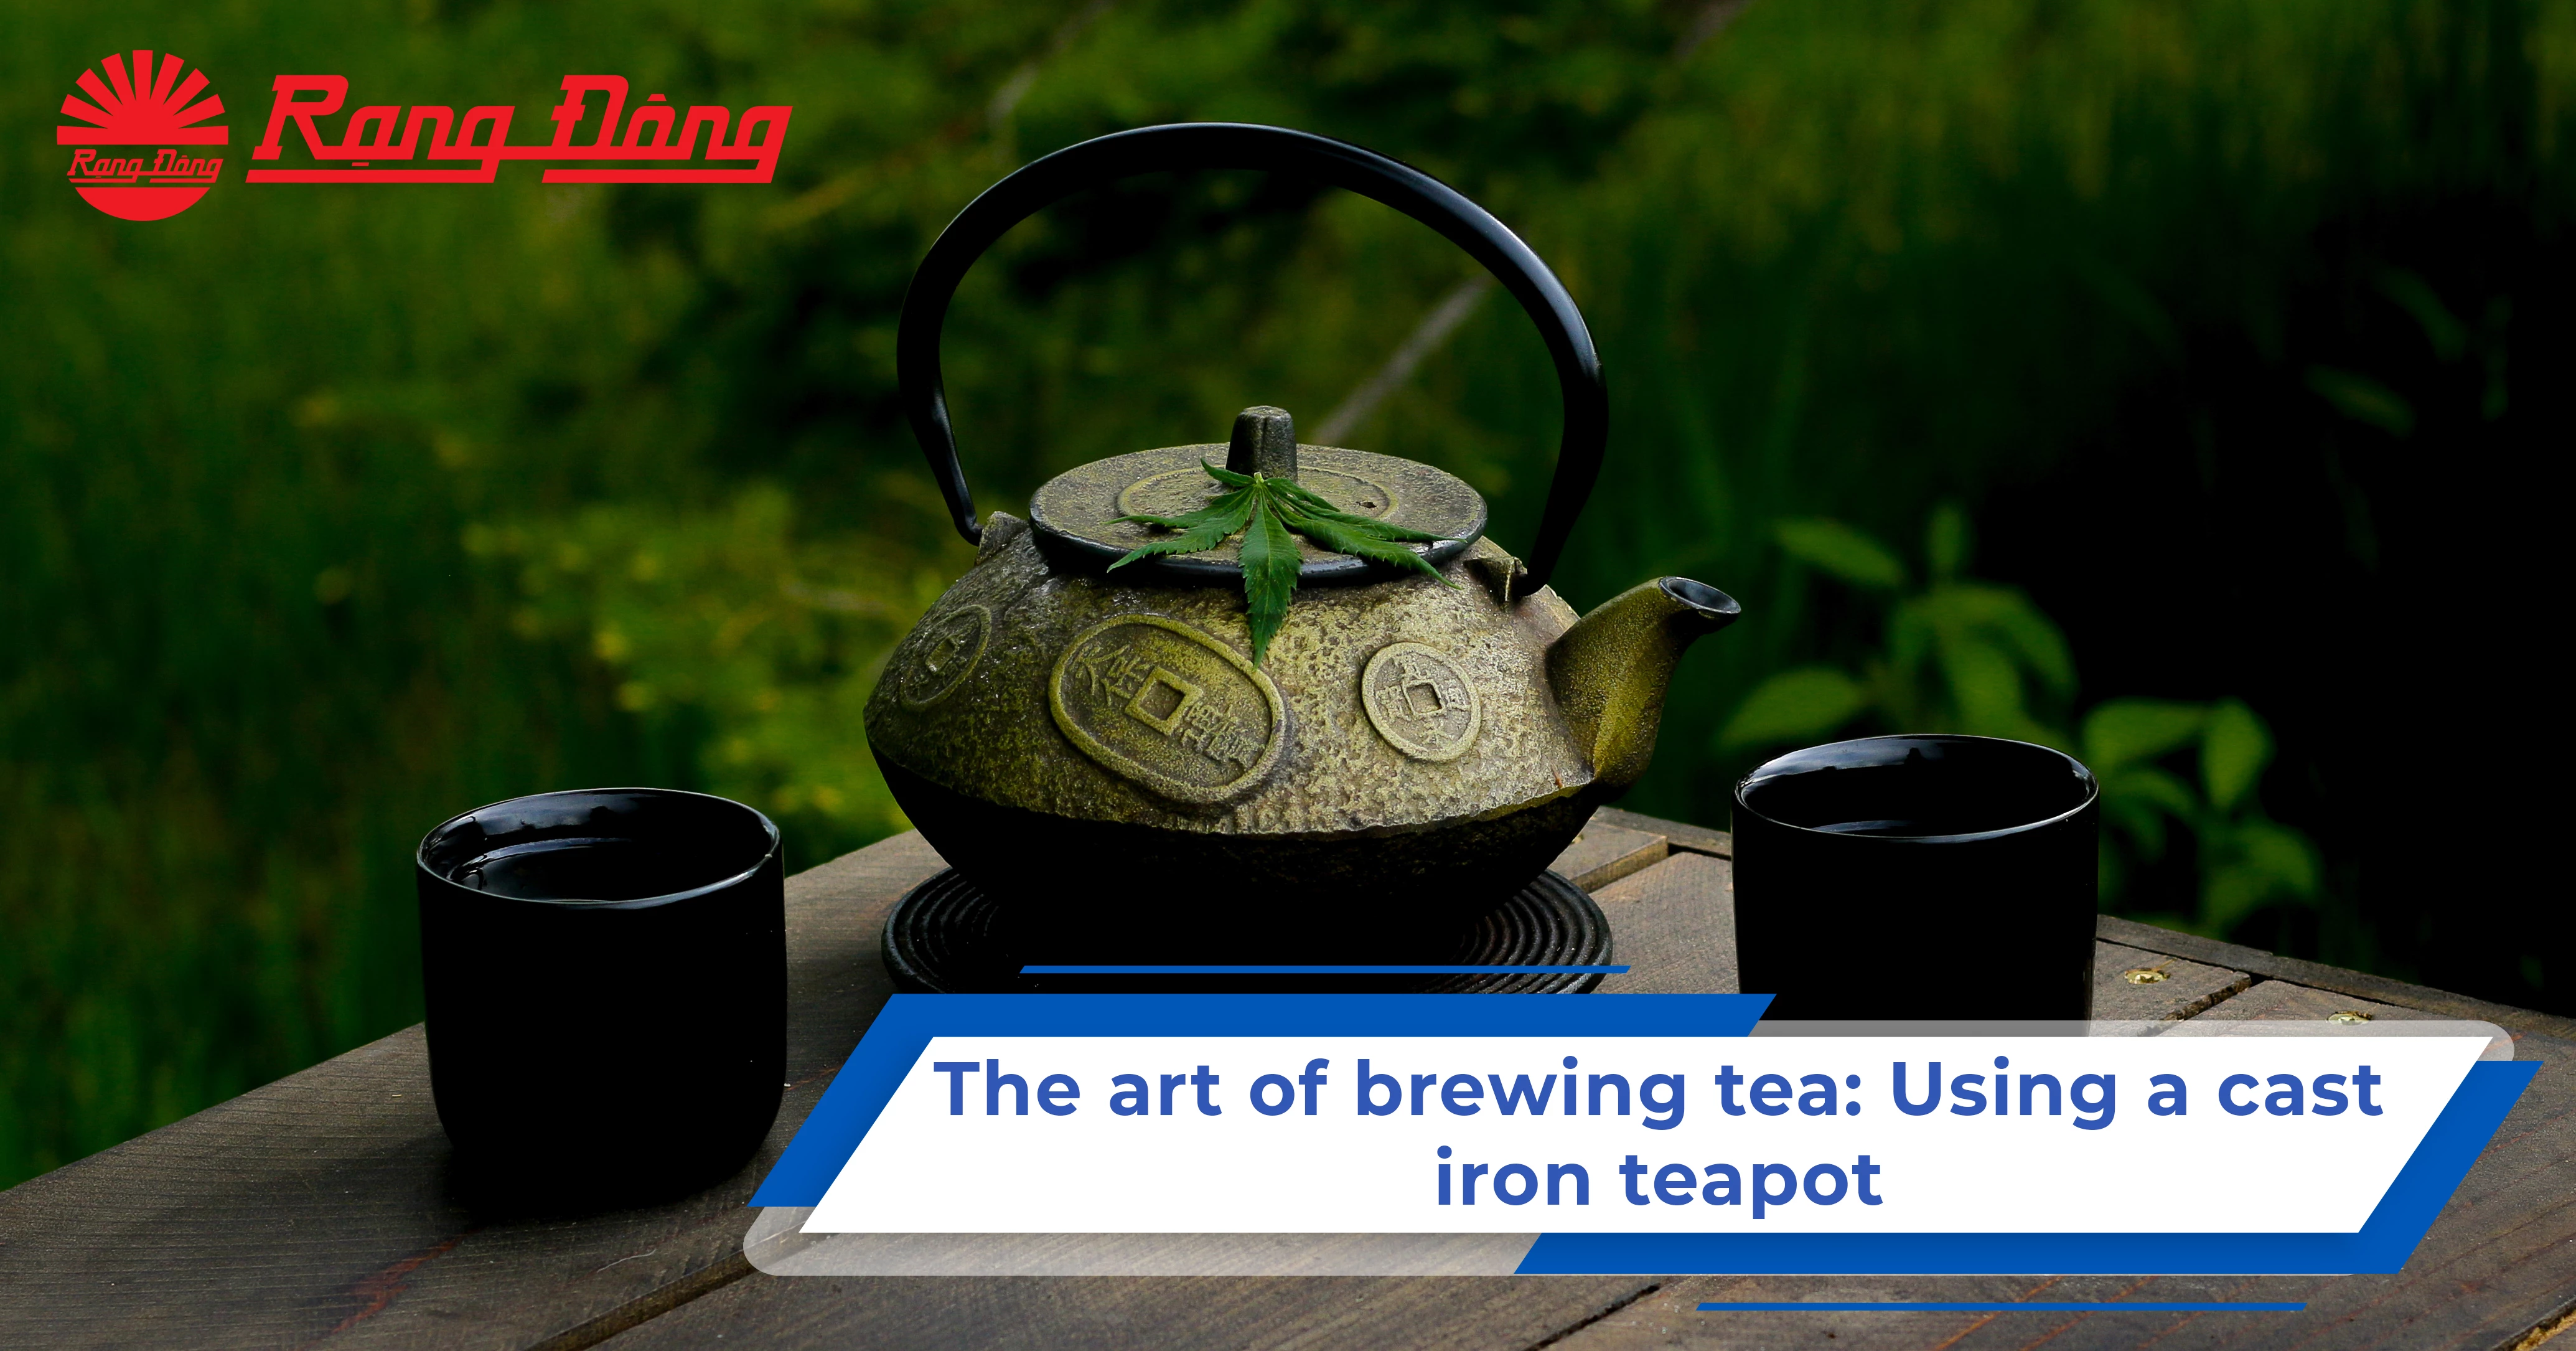 The art of brewing tea: Using a cast iron teapot